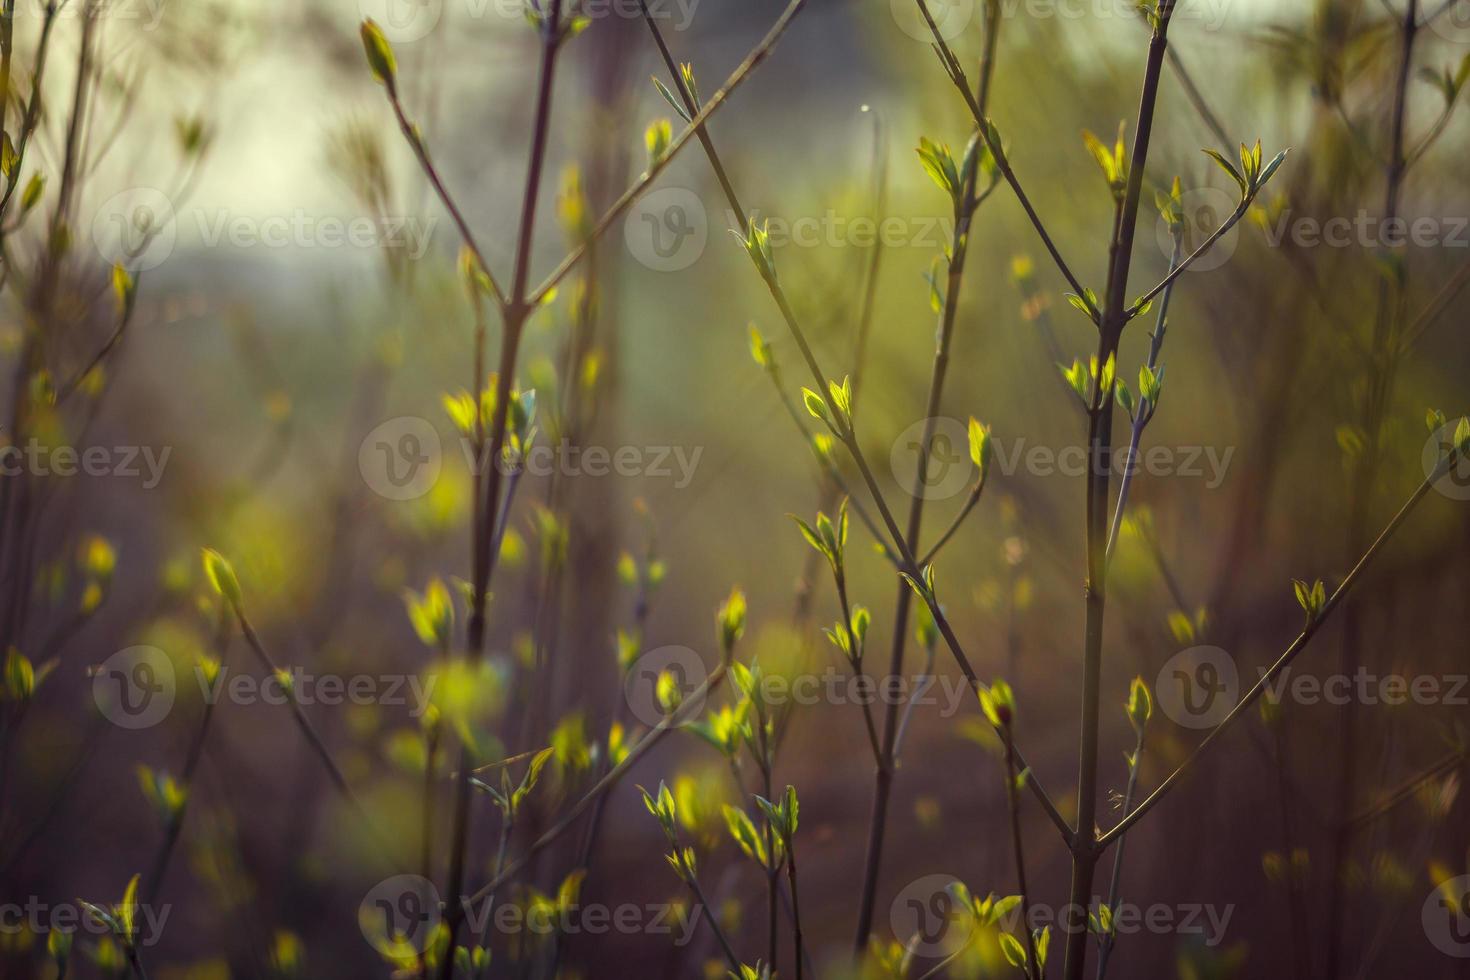 bomen bloeien in de lente. takken van een boom met kleine groene bladeren. achtergrond lichtgroen. vooraanzicht foto